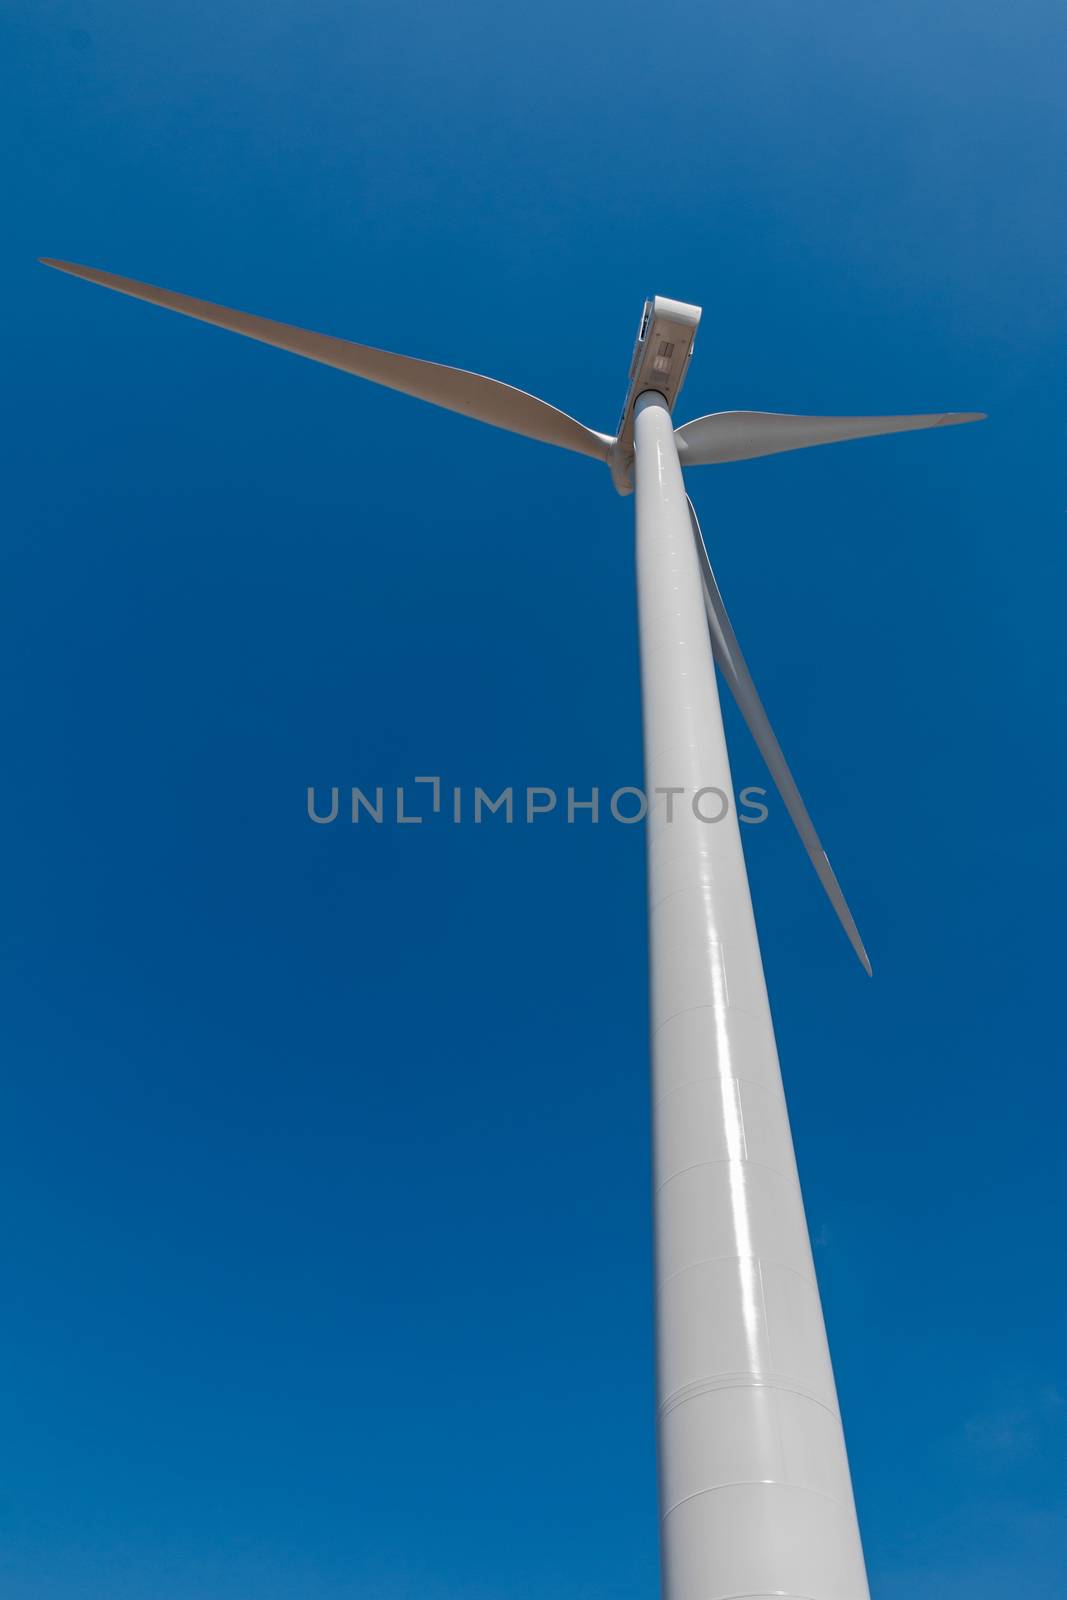 perspective of wind turbine in blue sky by EnzoArt